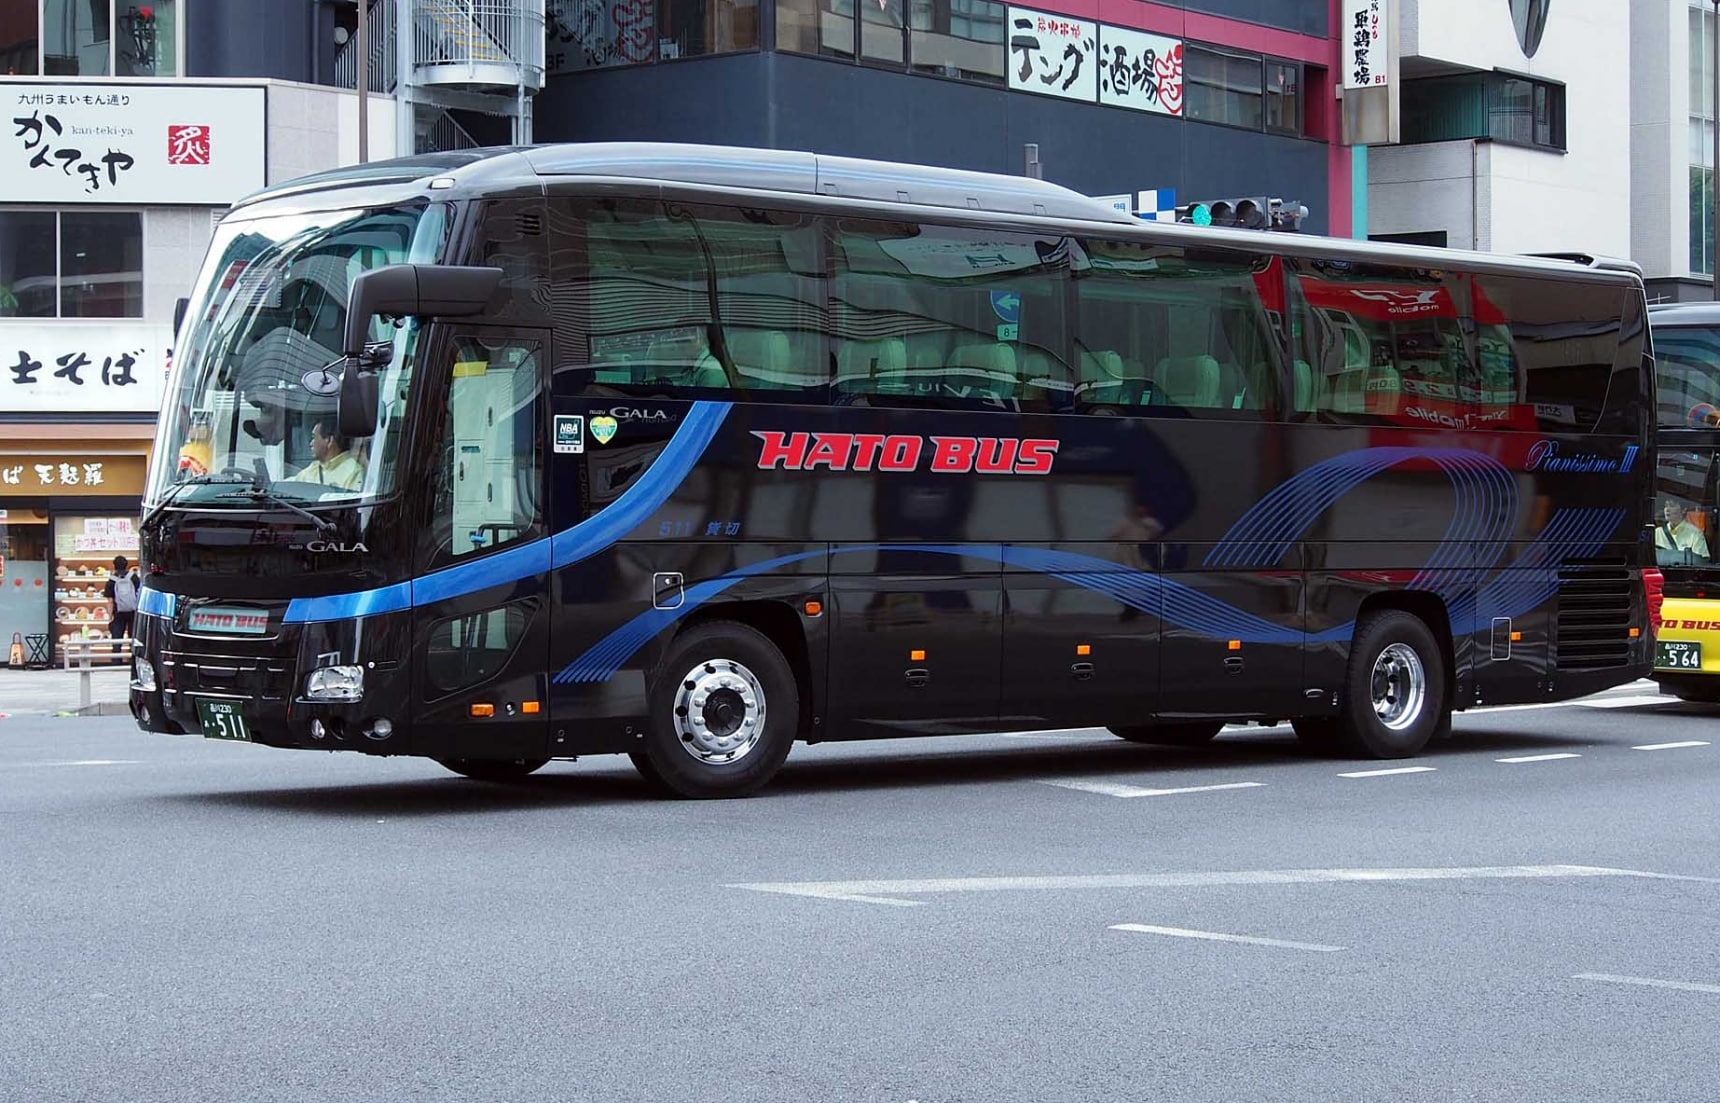 马上告别疲惫不堪的旅行，搭乘奢华Hato巴士前往伊豆玩个遍吧！